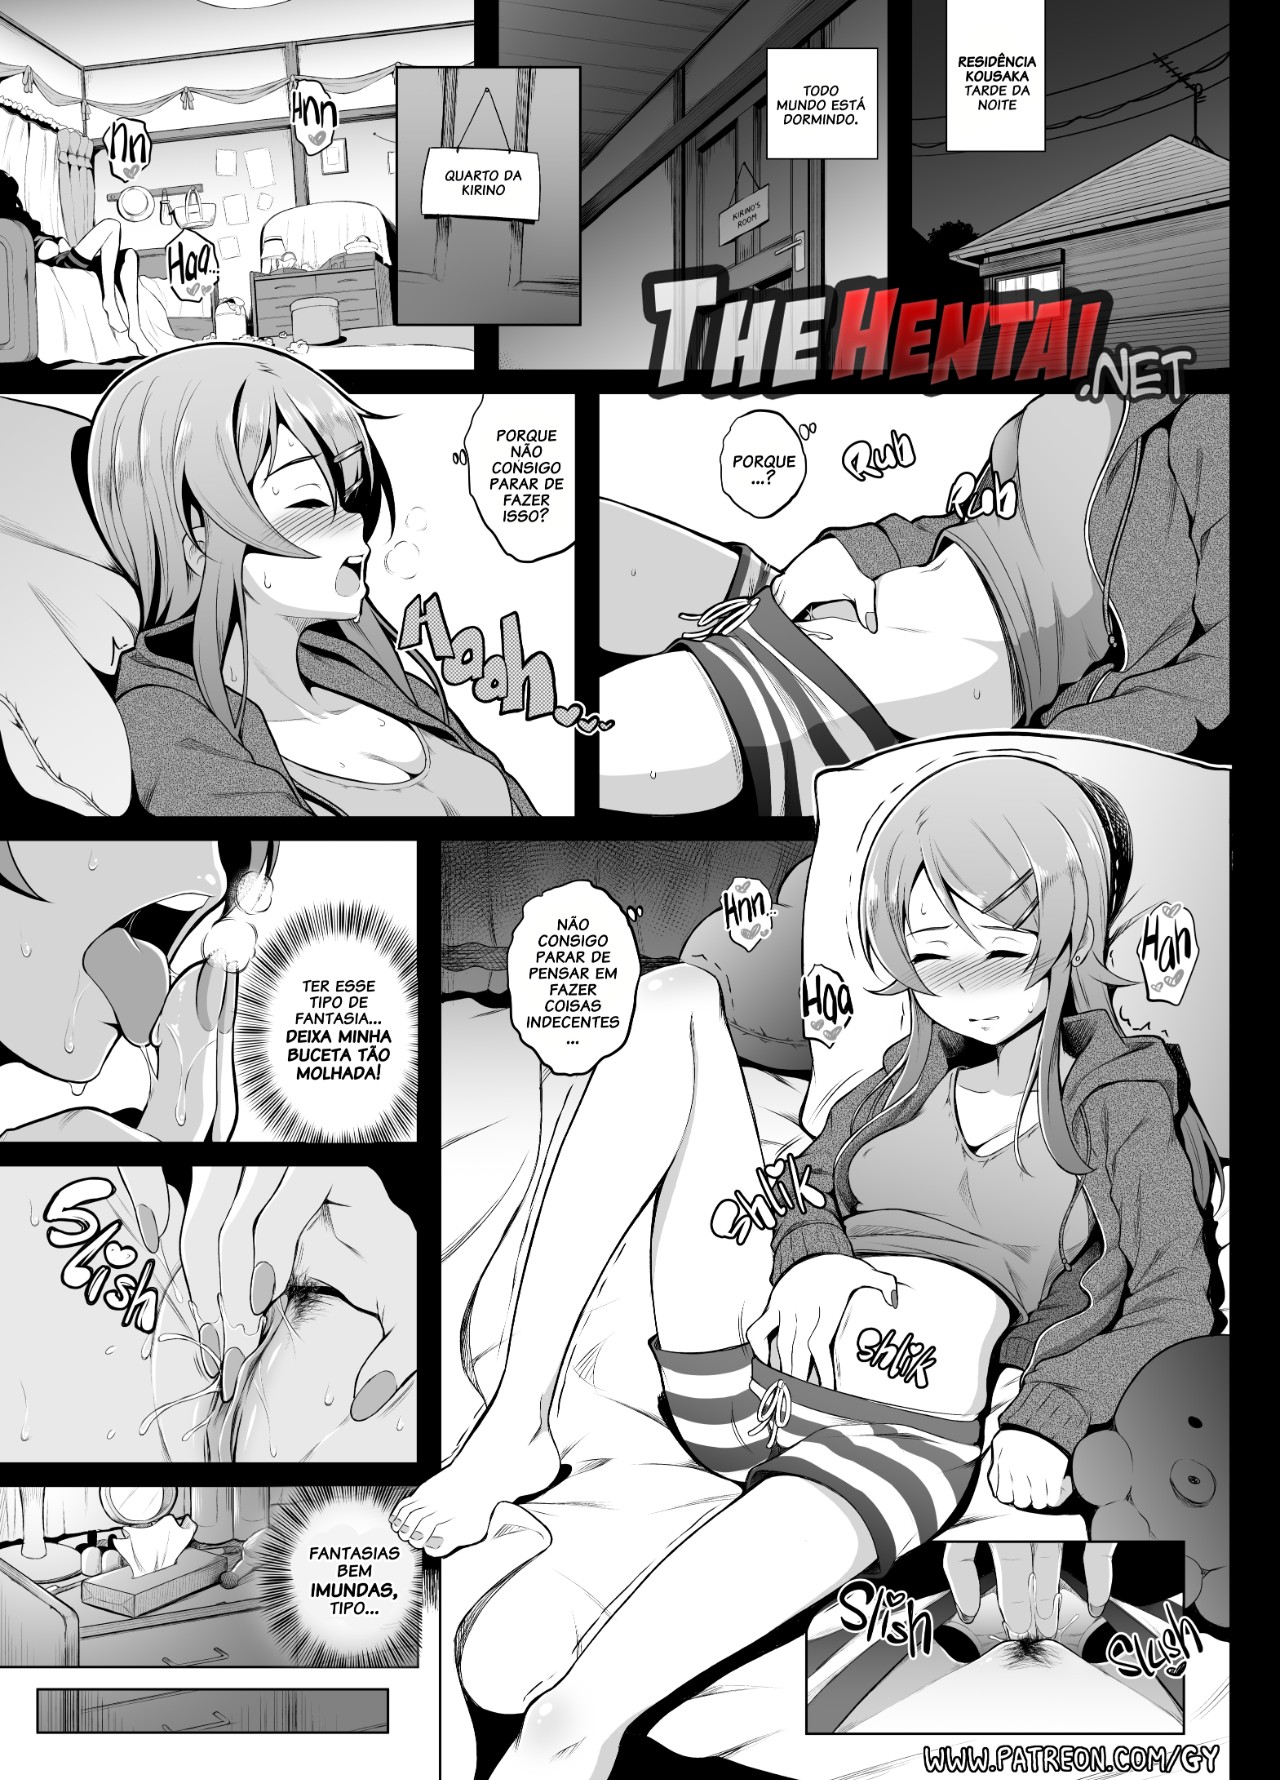 Kirino Comic By Ghettoyouth Hentai pt-br 01